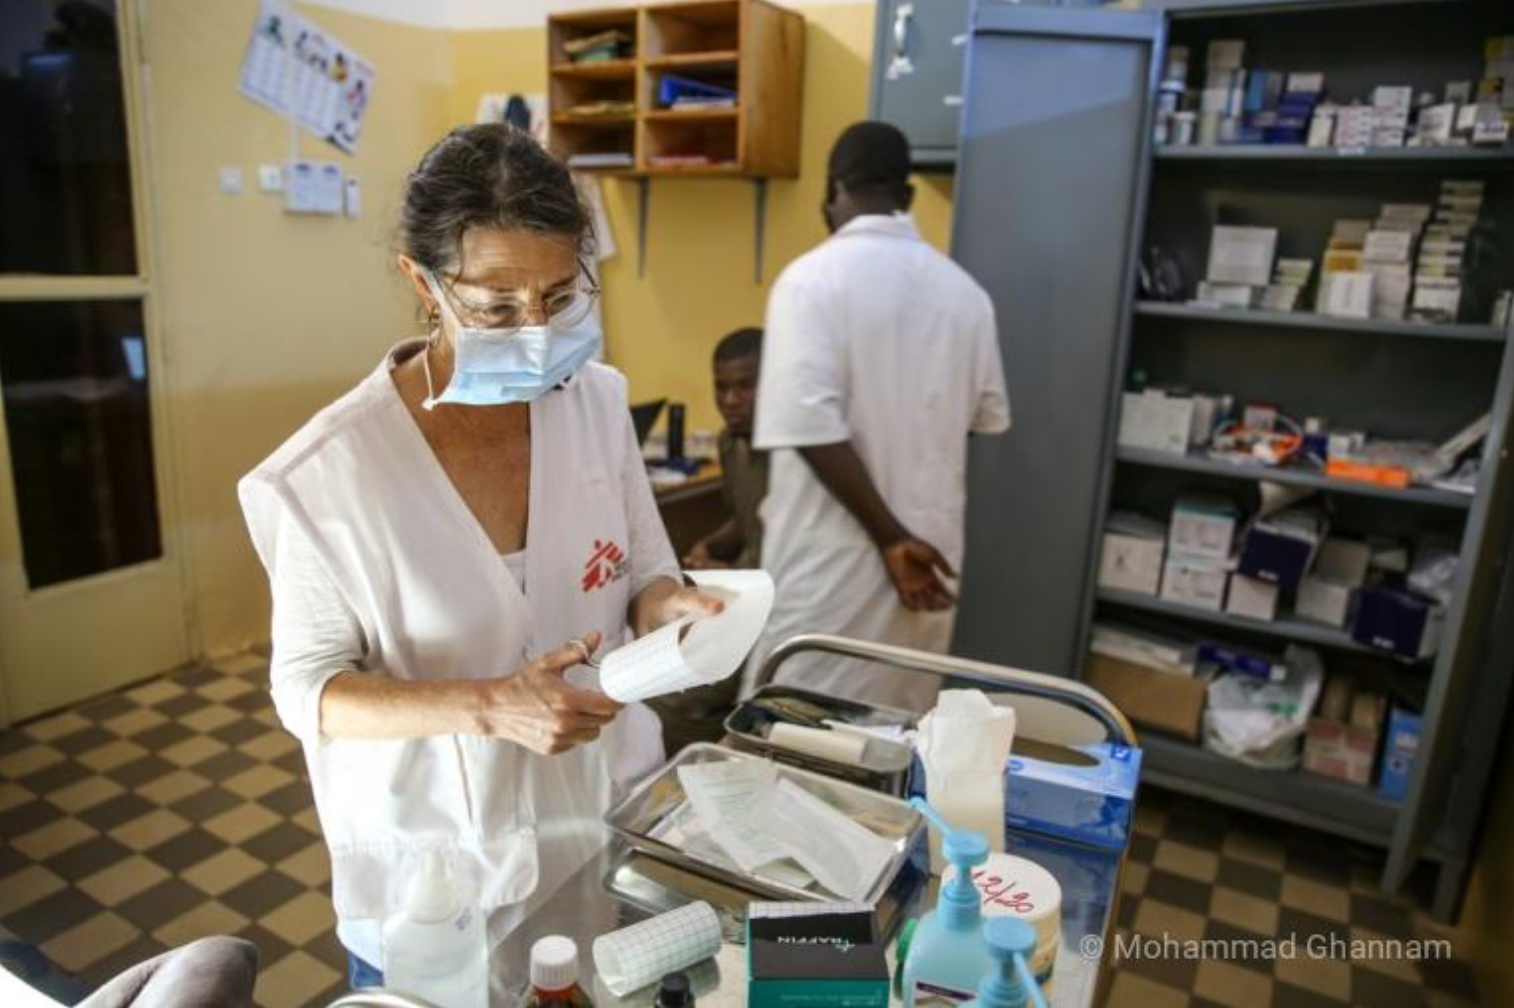 Médecins Sans Frontières (MSF) mobilisée à Bamako aux côtés du ministère de la Santé malien